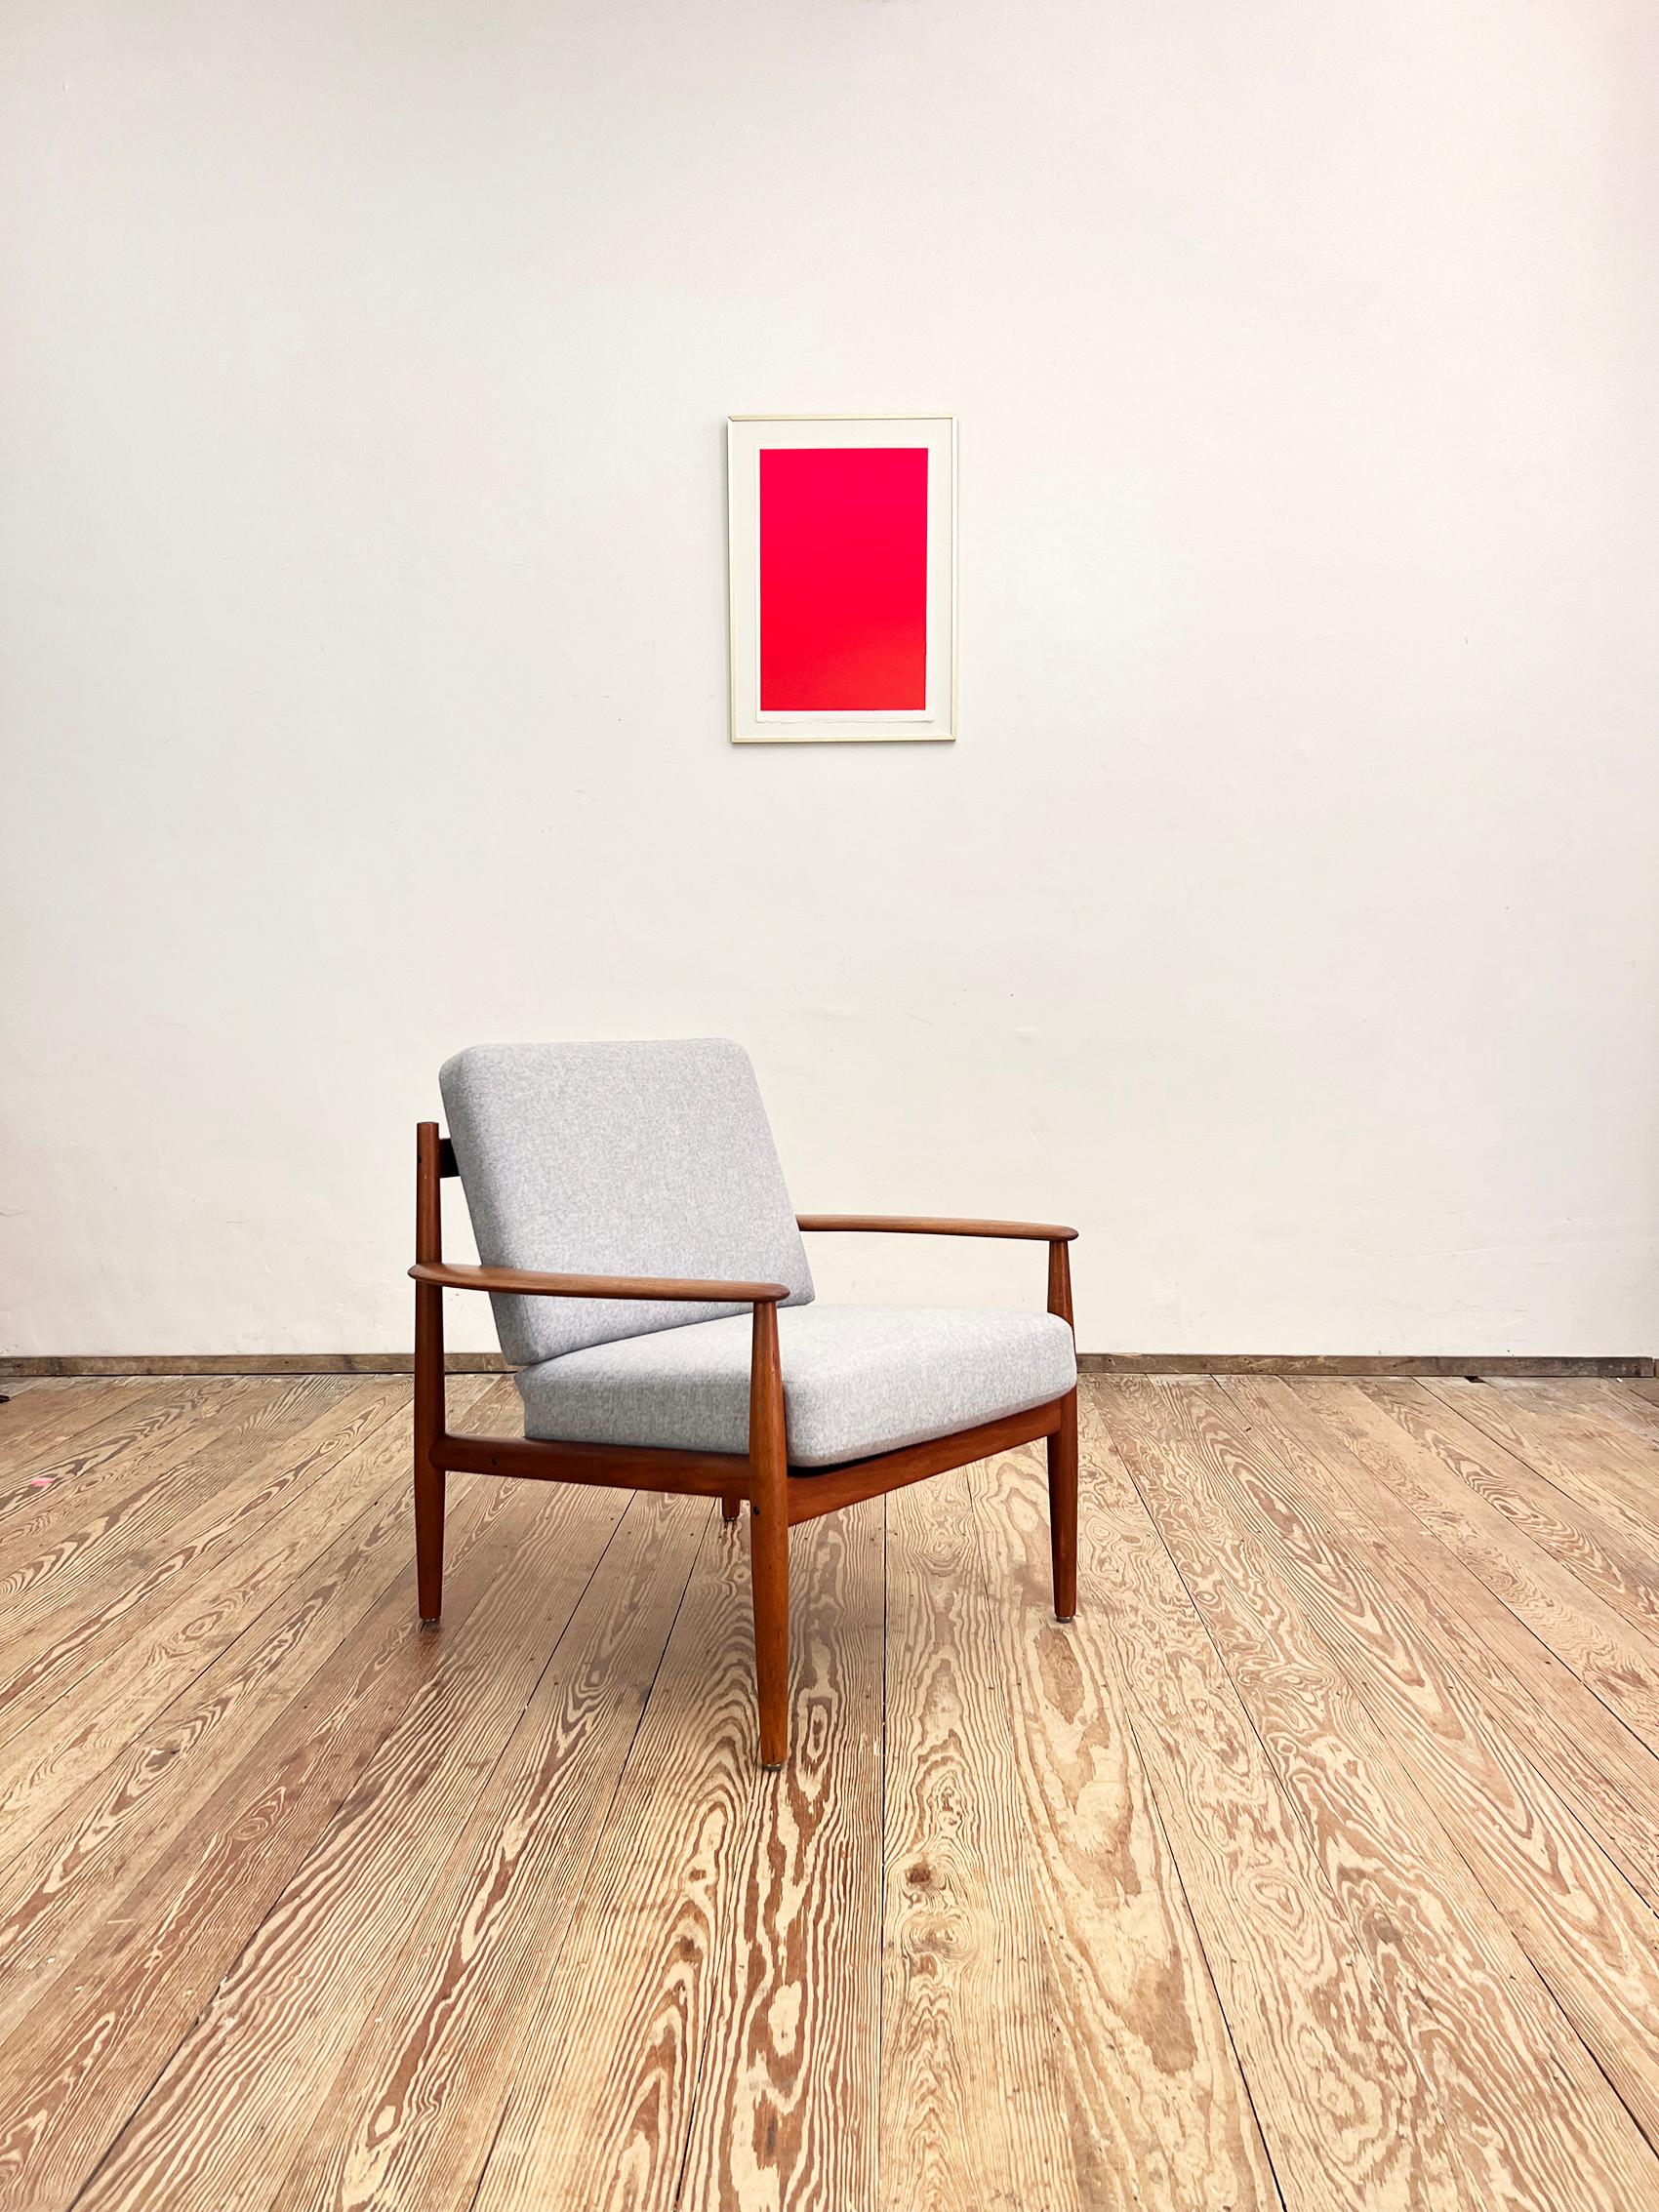 Dimensions : 73 x 75 x 77 cm (largeur x hauteur x profondeur) : 73 x 75 x 77 cm (largeur x hauteur x profondeur)

Cette magnifique chaise longue a été conçue par Grete Jalk pour France and Son dans les années 1950 au Danemark. La forme élégante et